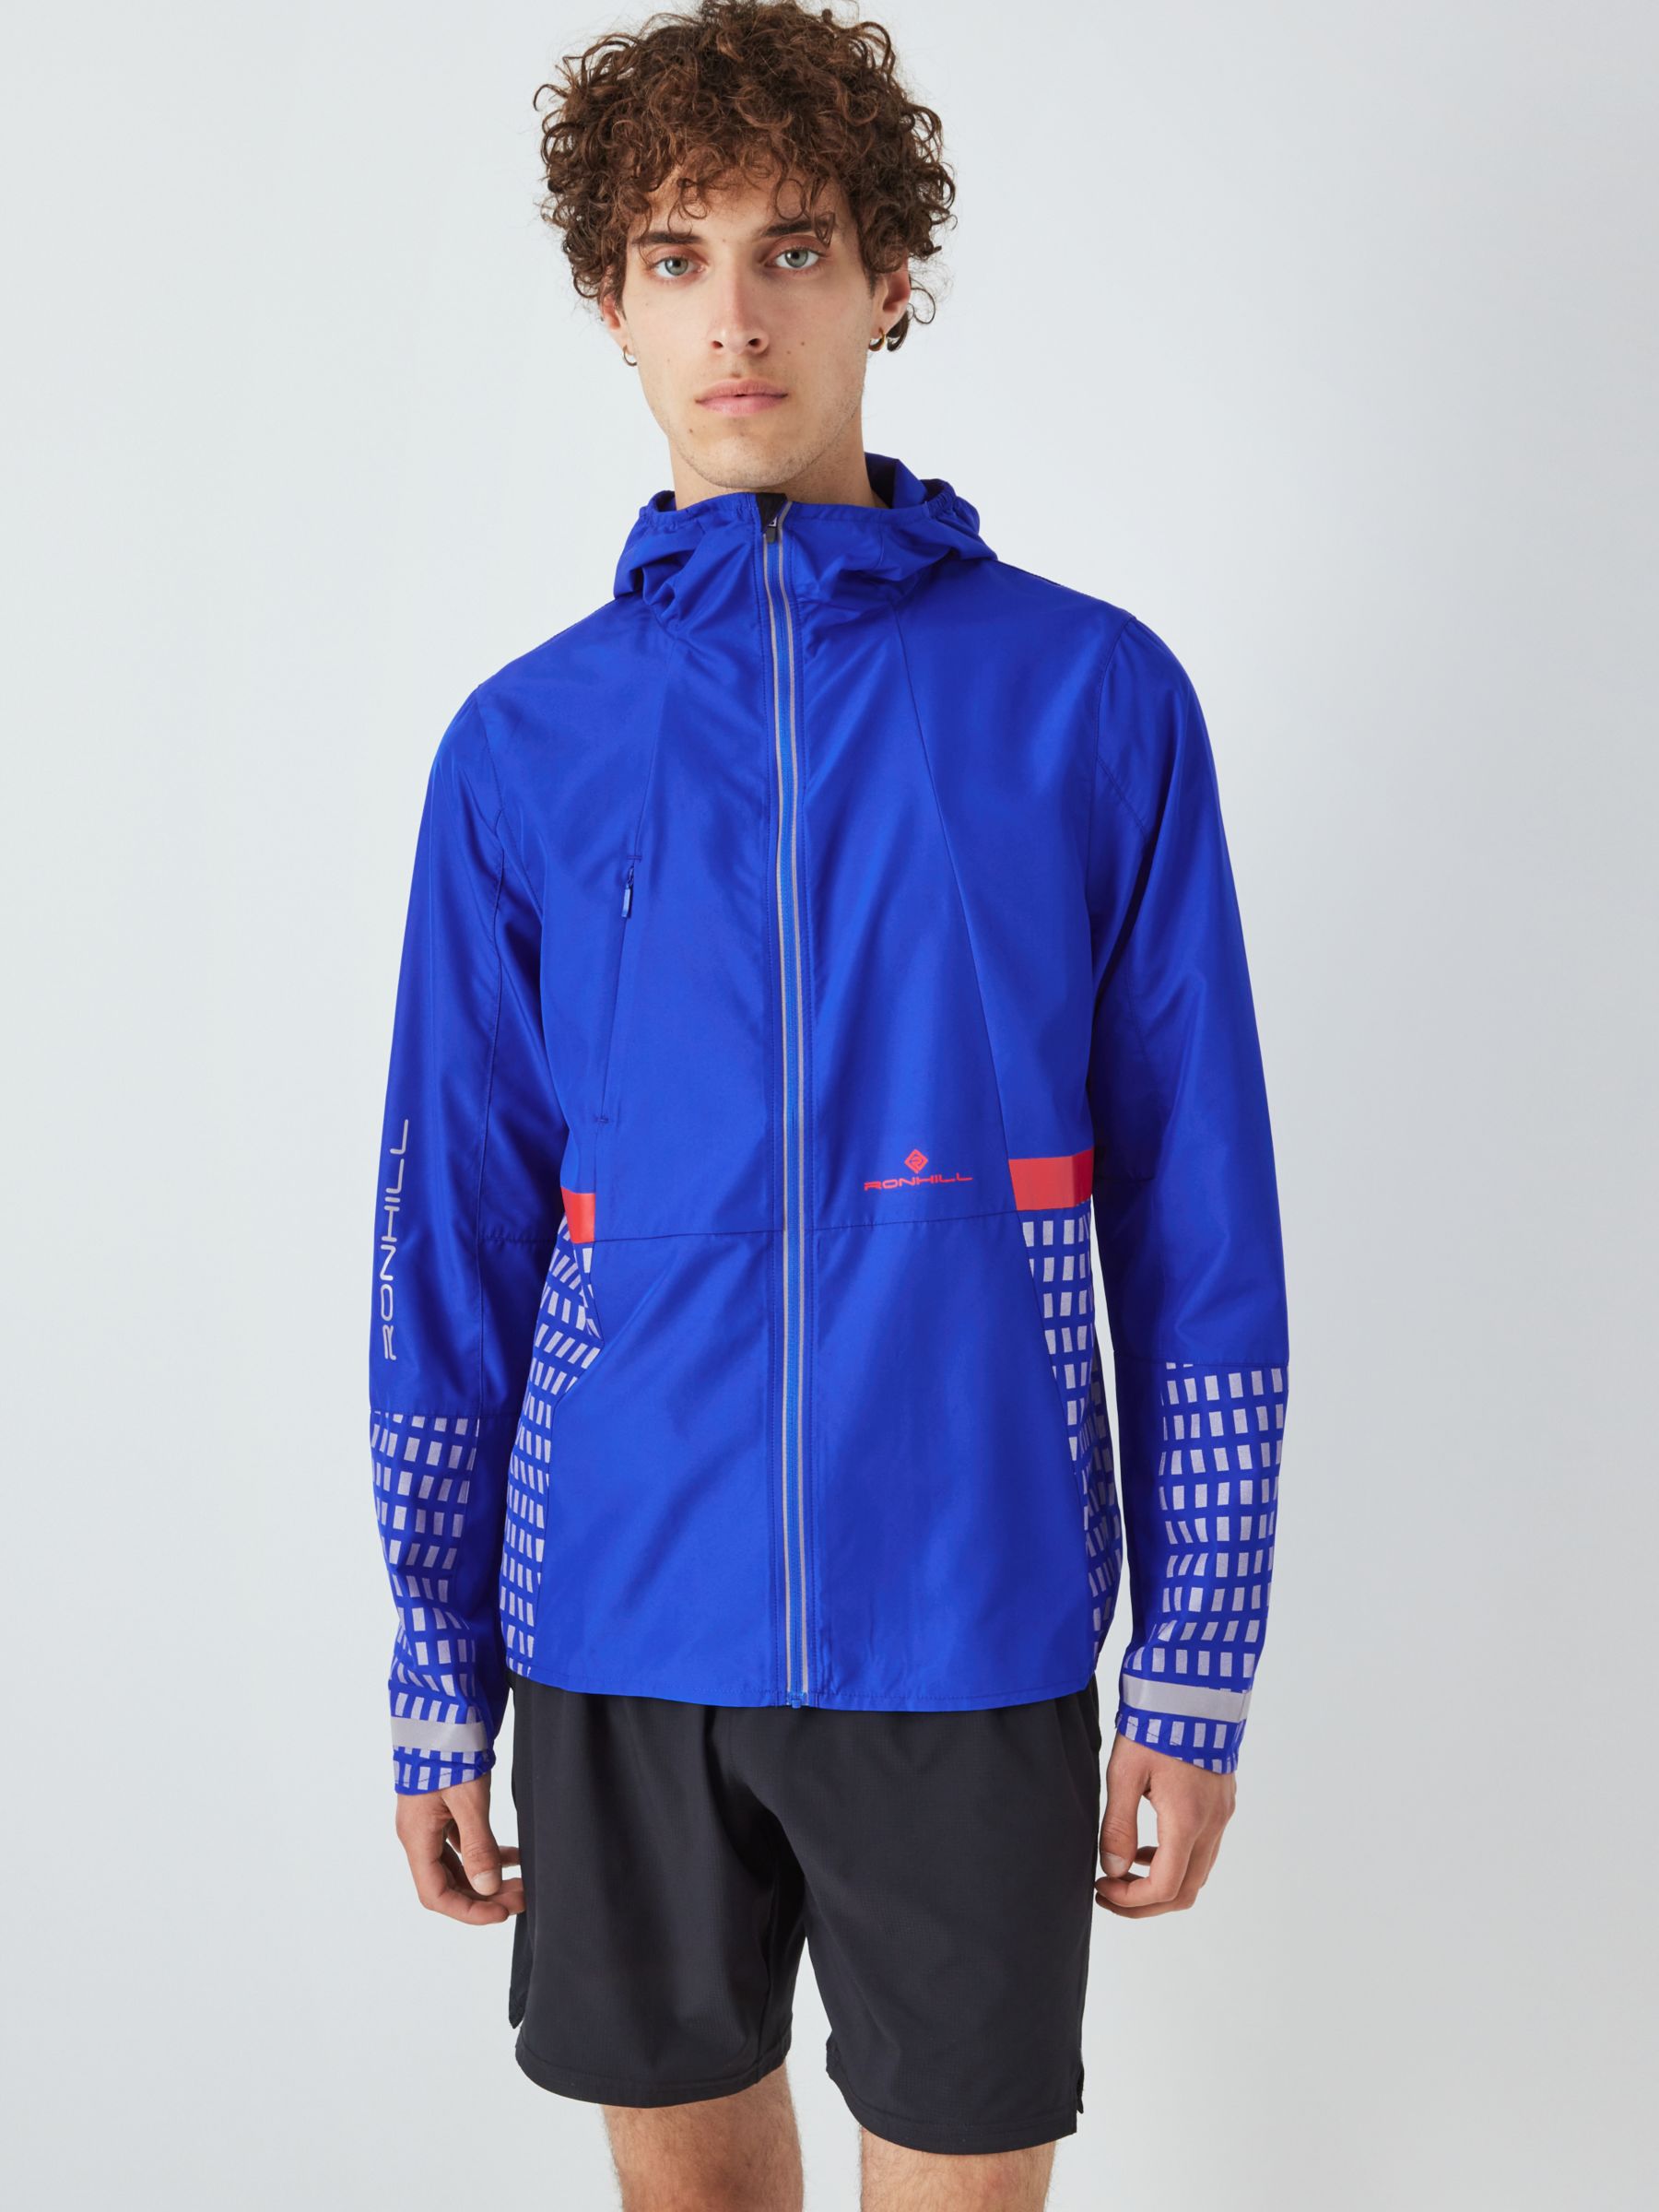 Ronhill Men's Reflective Running Jacket, Cobalt, M